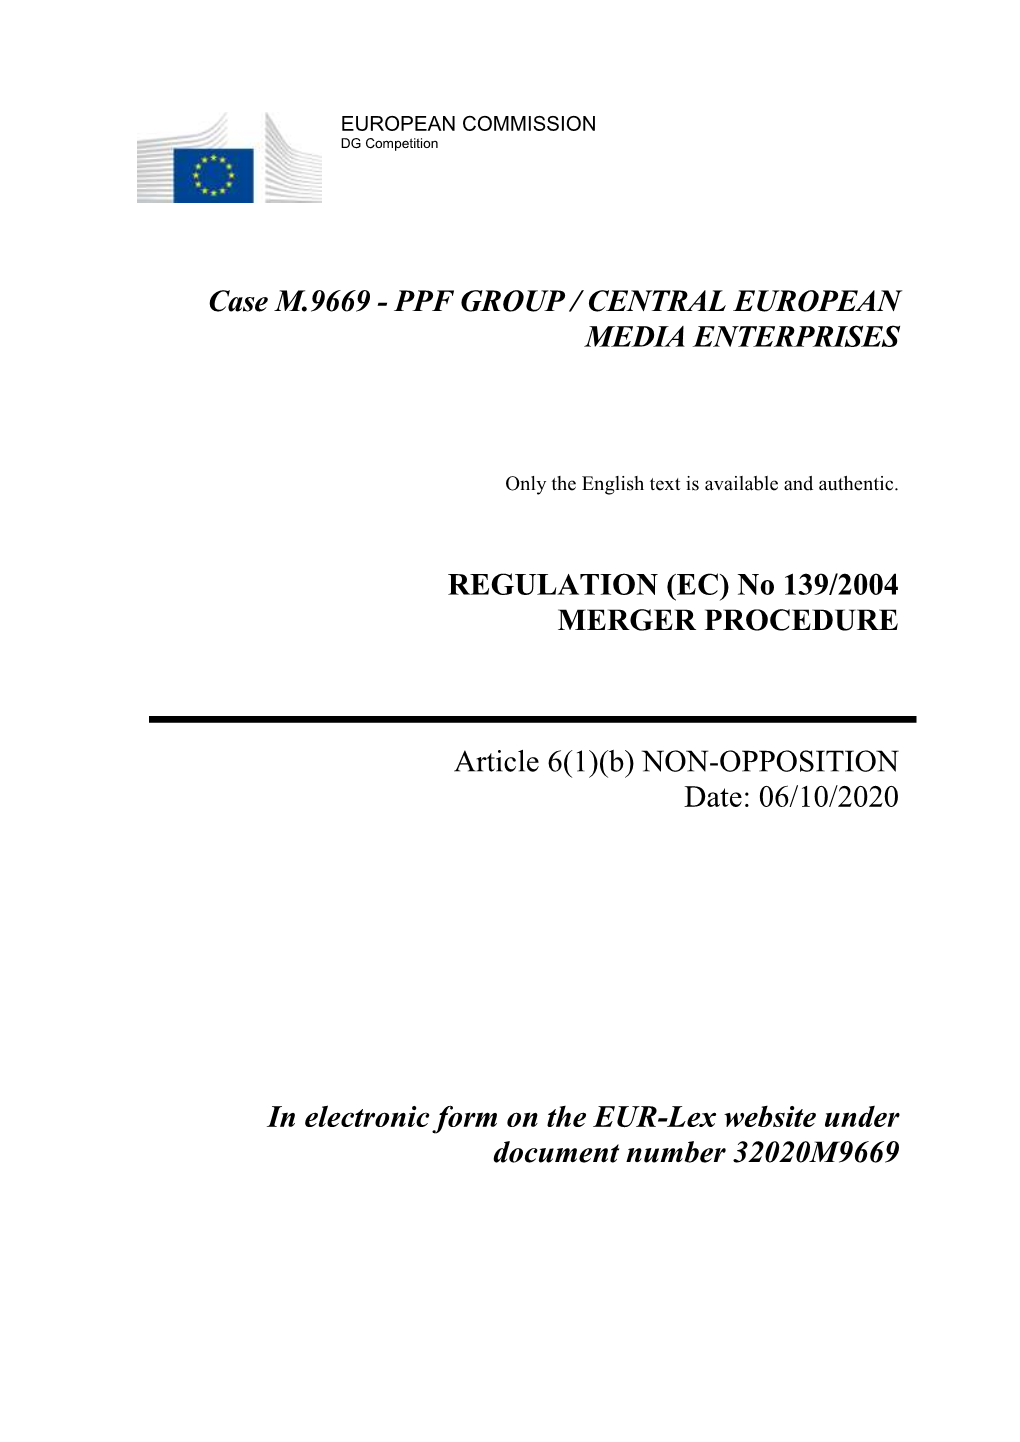 Case M.9669 - PPF GROUP / CENTRAL EUROPEAN MEDIA ENTERPRISES